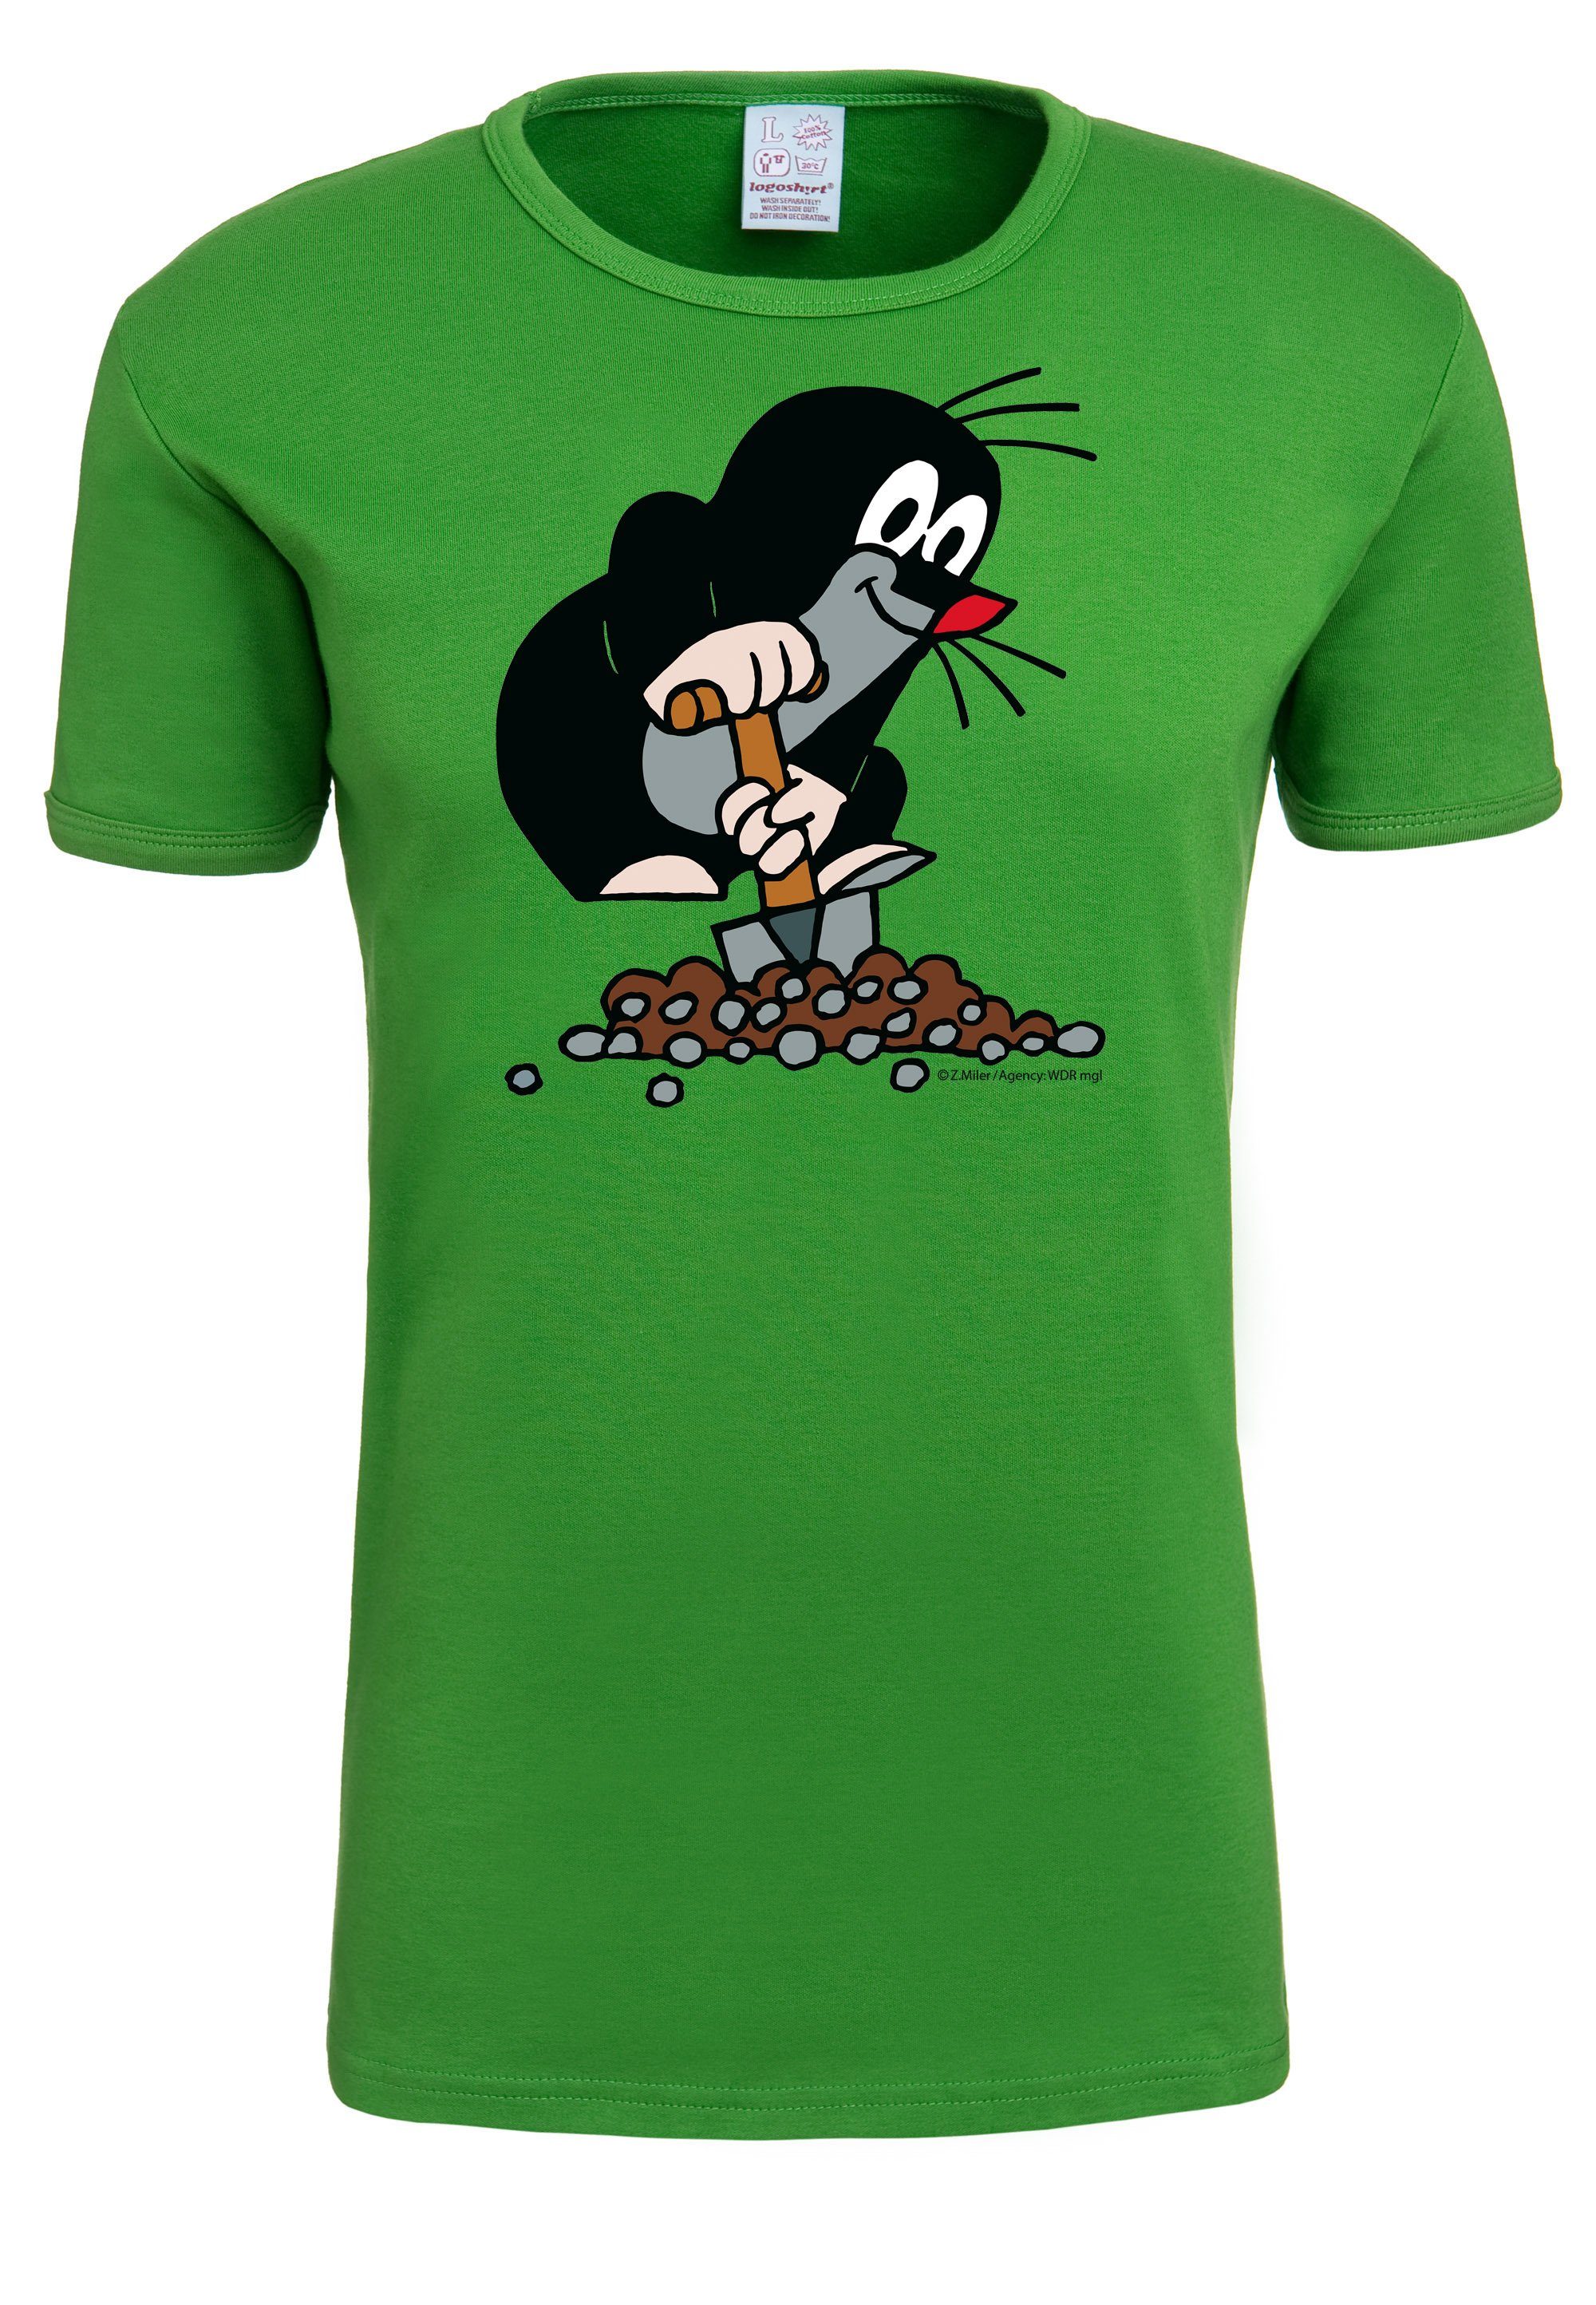 LOGOSHIRT Originaldesign T-Shirt mit Maulwurf kleine lizenziertem Der